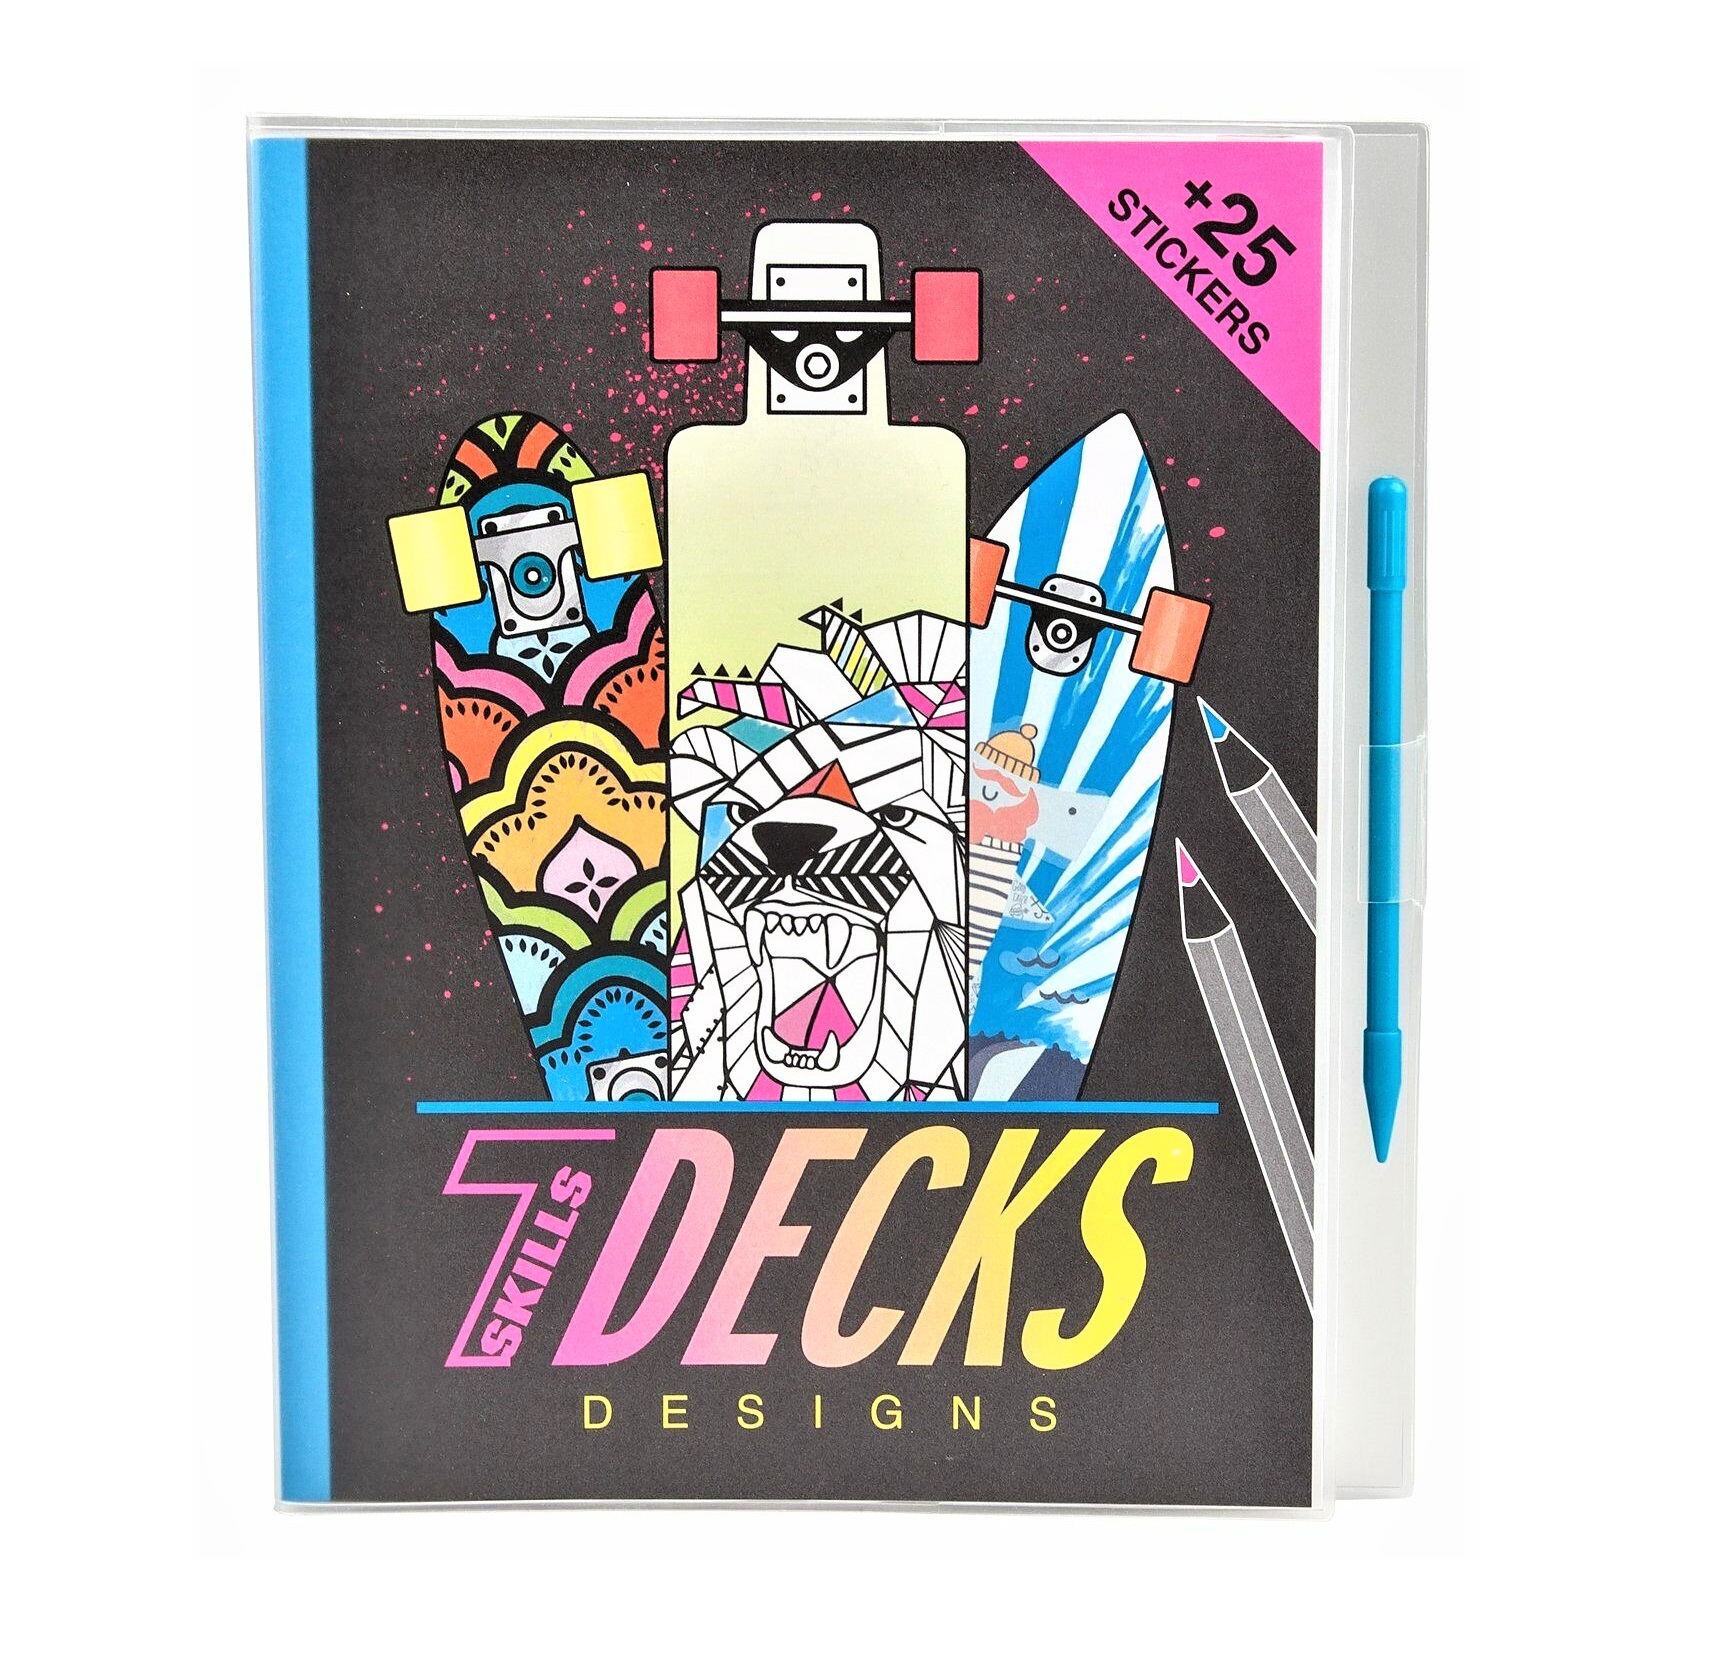 Färgglad målarbok där du själv skapar motiv och lägger till färg på skateboardsen i boken. Det medföljer även coola klistermärken med olika motiv, dödskalle, graffiti m.m